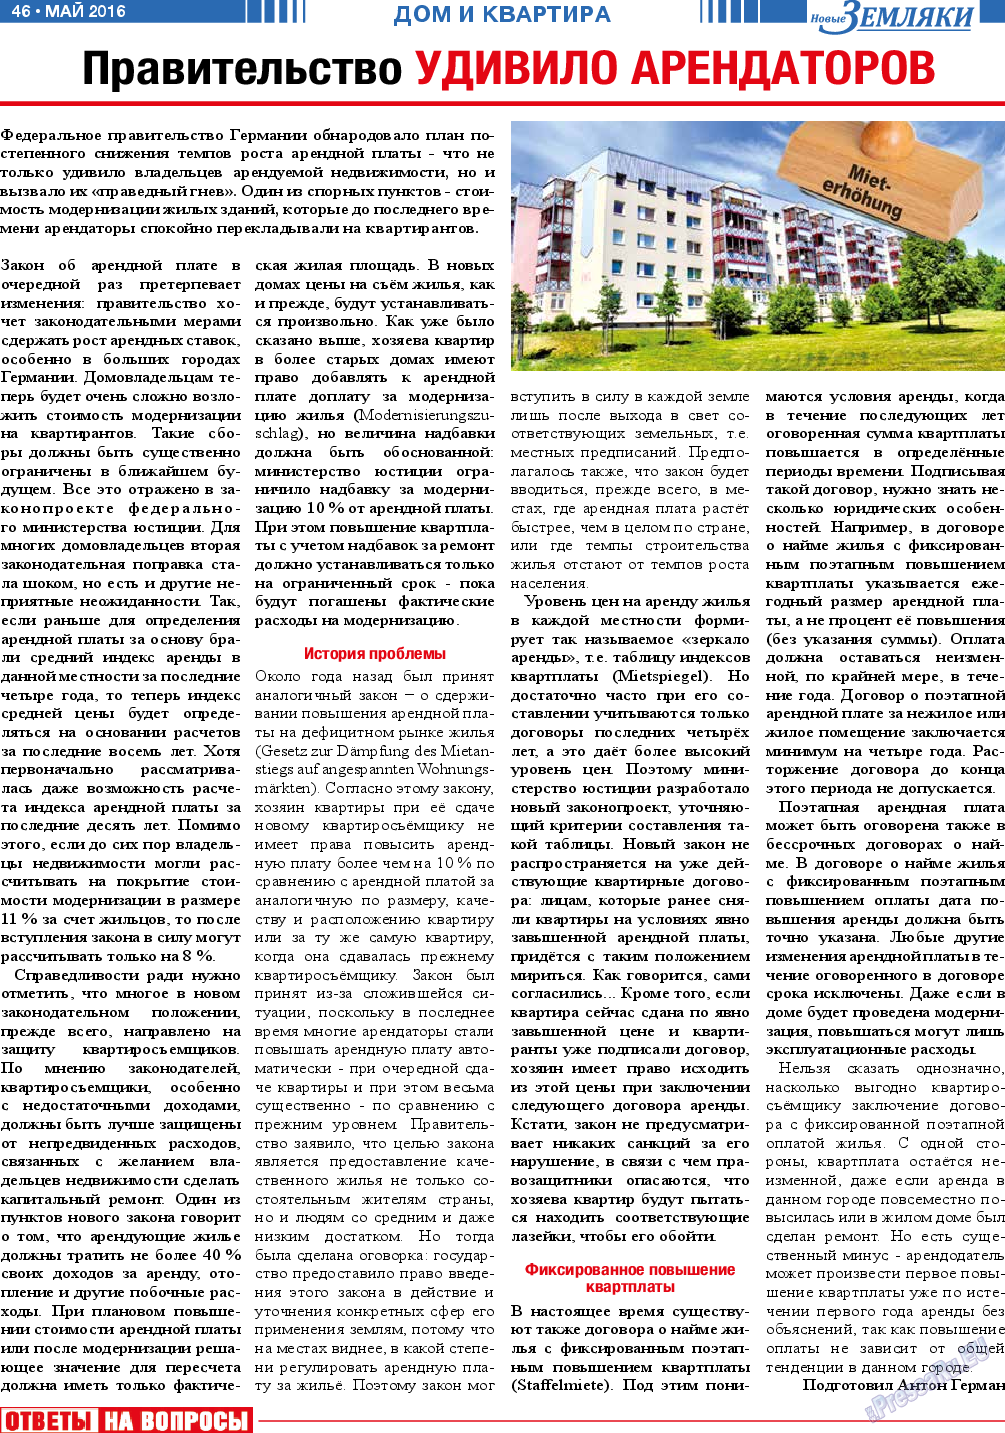 Новые Земляки, газета. 2016 №5 стр.46